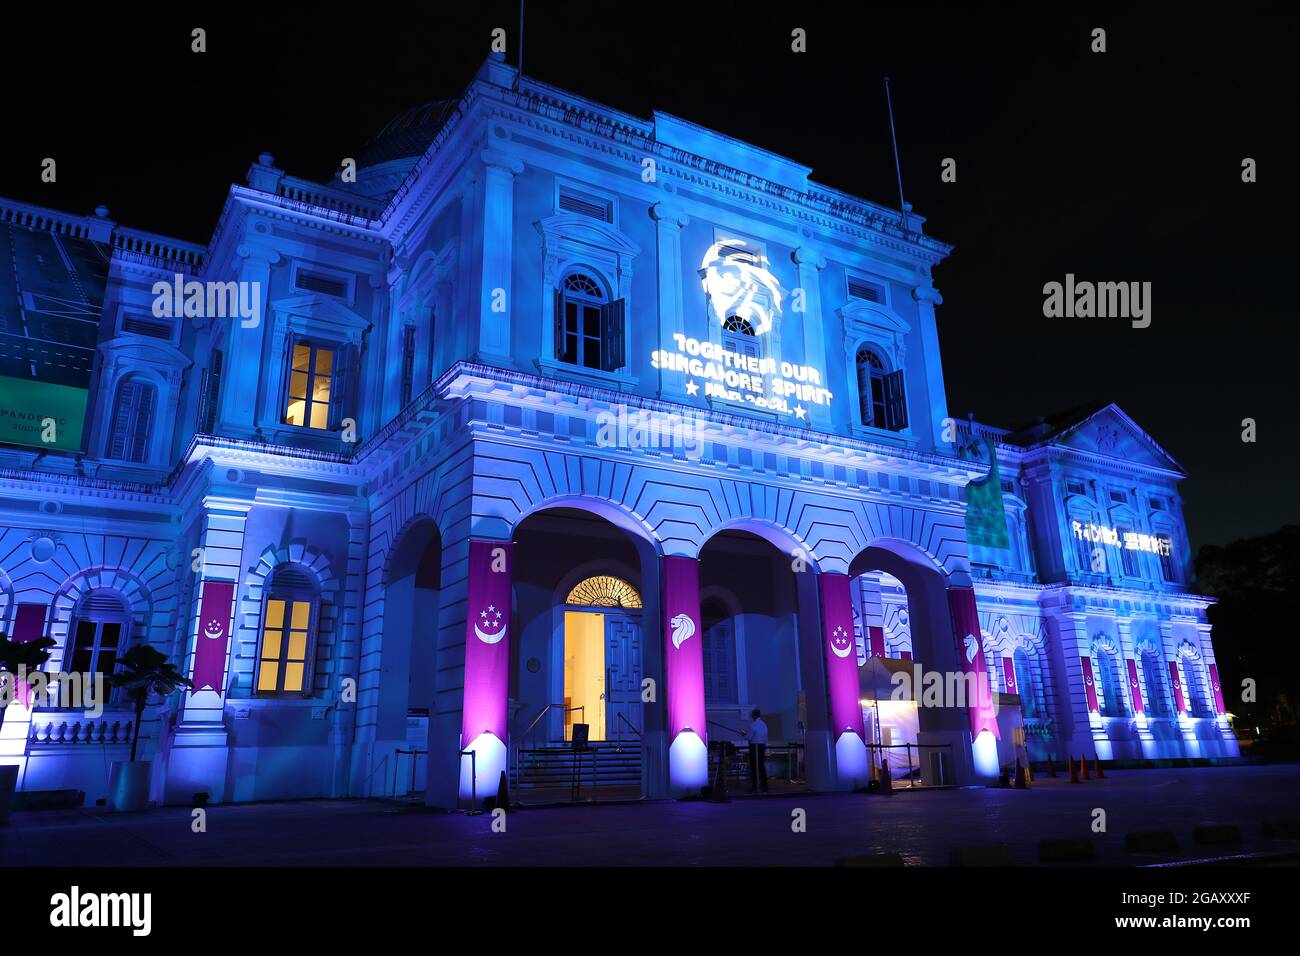 El Museo Nacional de Singapur está iluminado en la fachada exterior con  proyectores de iluminación en Singapur. Siete edificios culturales e  históricos en el recinto Bras Basah-Bugis se iluminarán en los colores